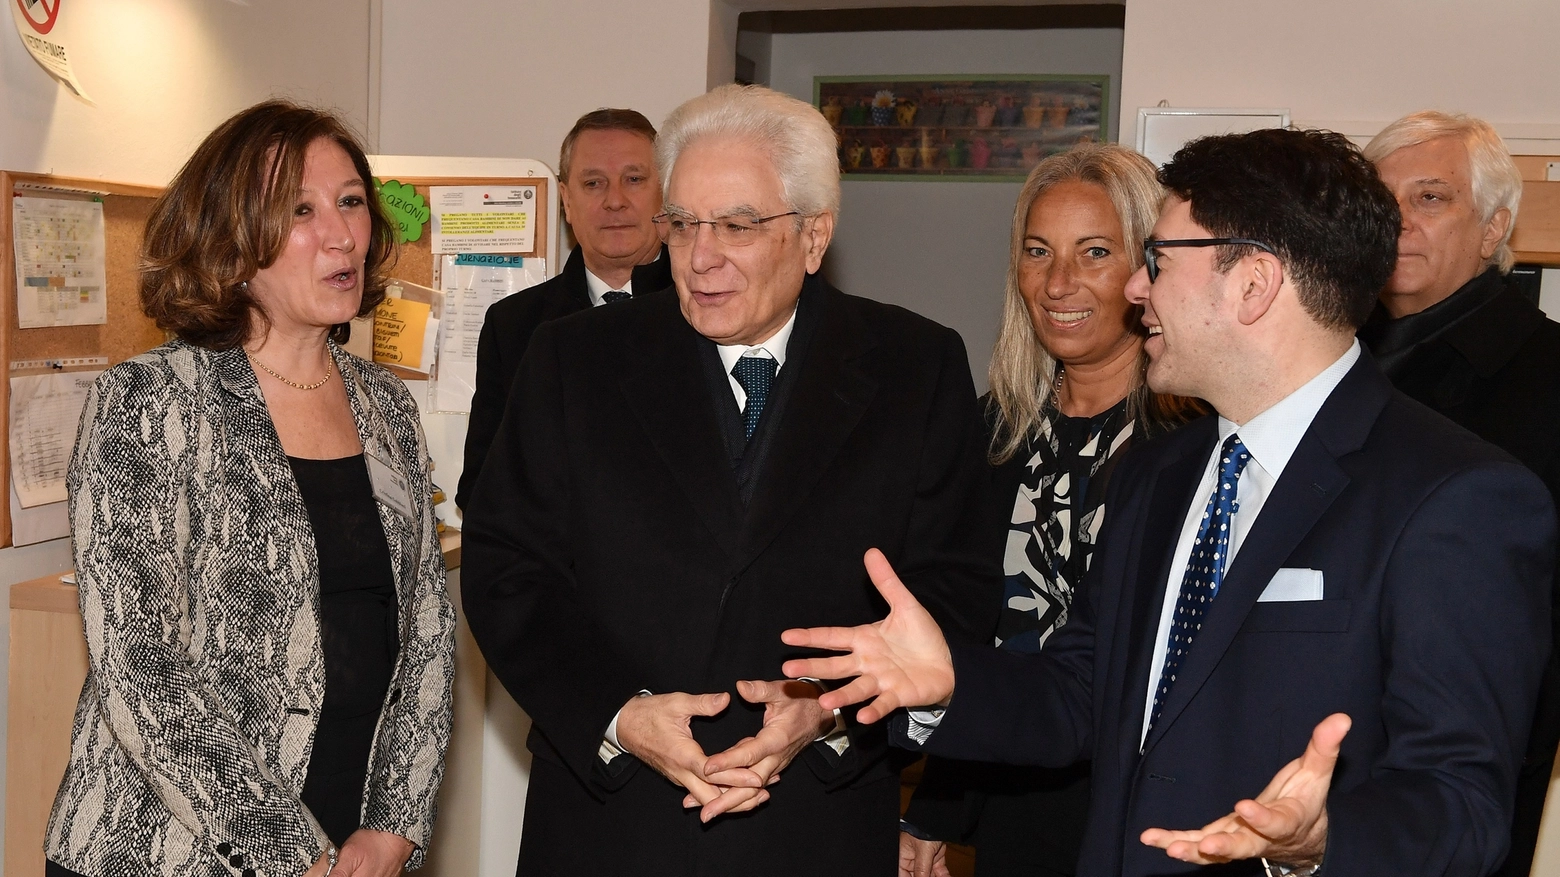 Il presidente Mattarella durante la visita all'Istituto degli Innocenti